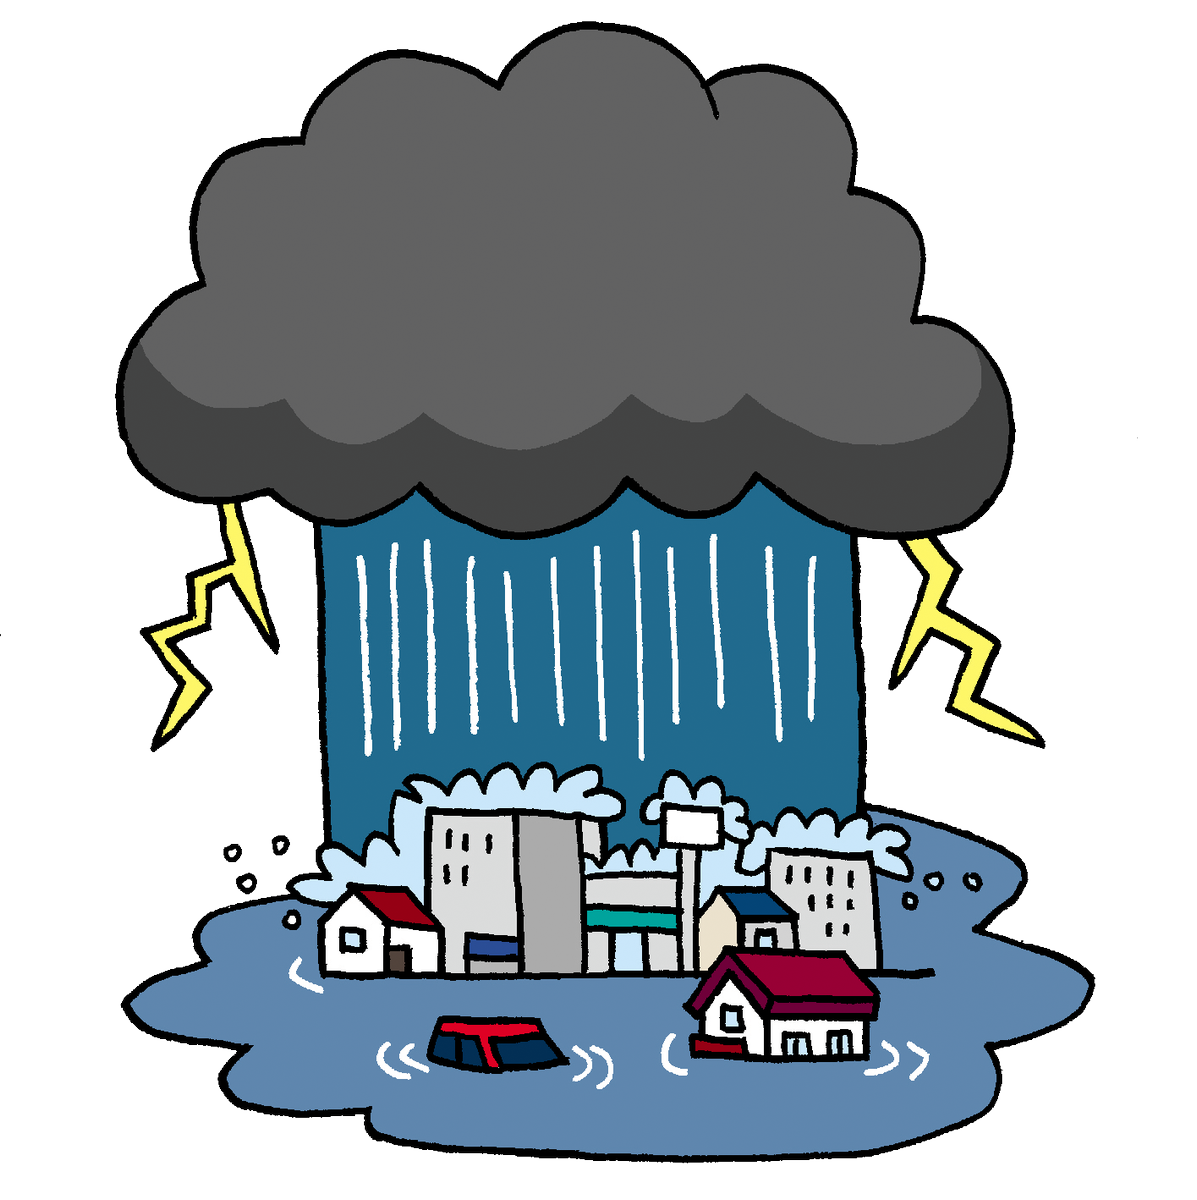 防災無料イラスト Twitterren 雨雲レーダーと豪雨のイラスト T Co Jxvdb23dvf 今日も東北地方を中心に大雨が予想されているようで心配です 大きな被害が出ないように願うばかりです